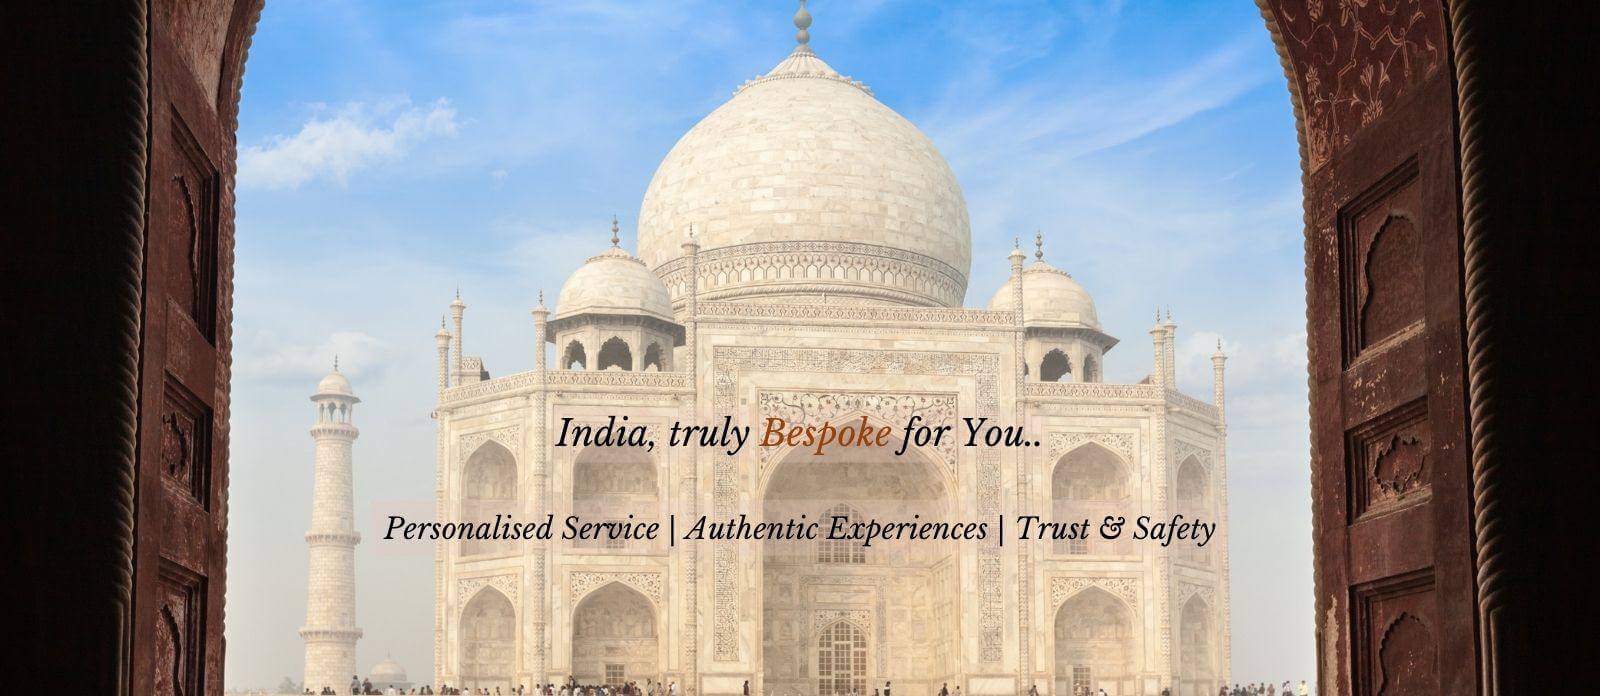 Luxury Tour To India Luxury Tours Of India Bespoke India Holidays